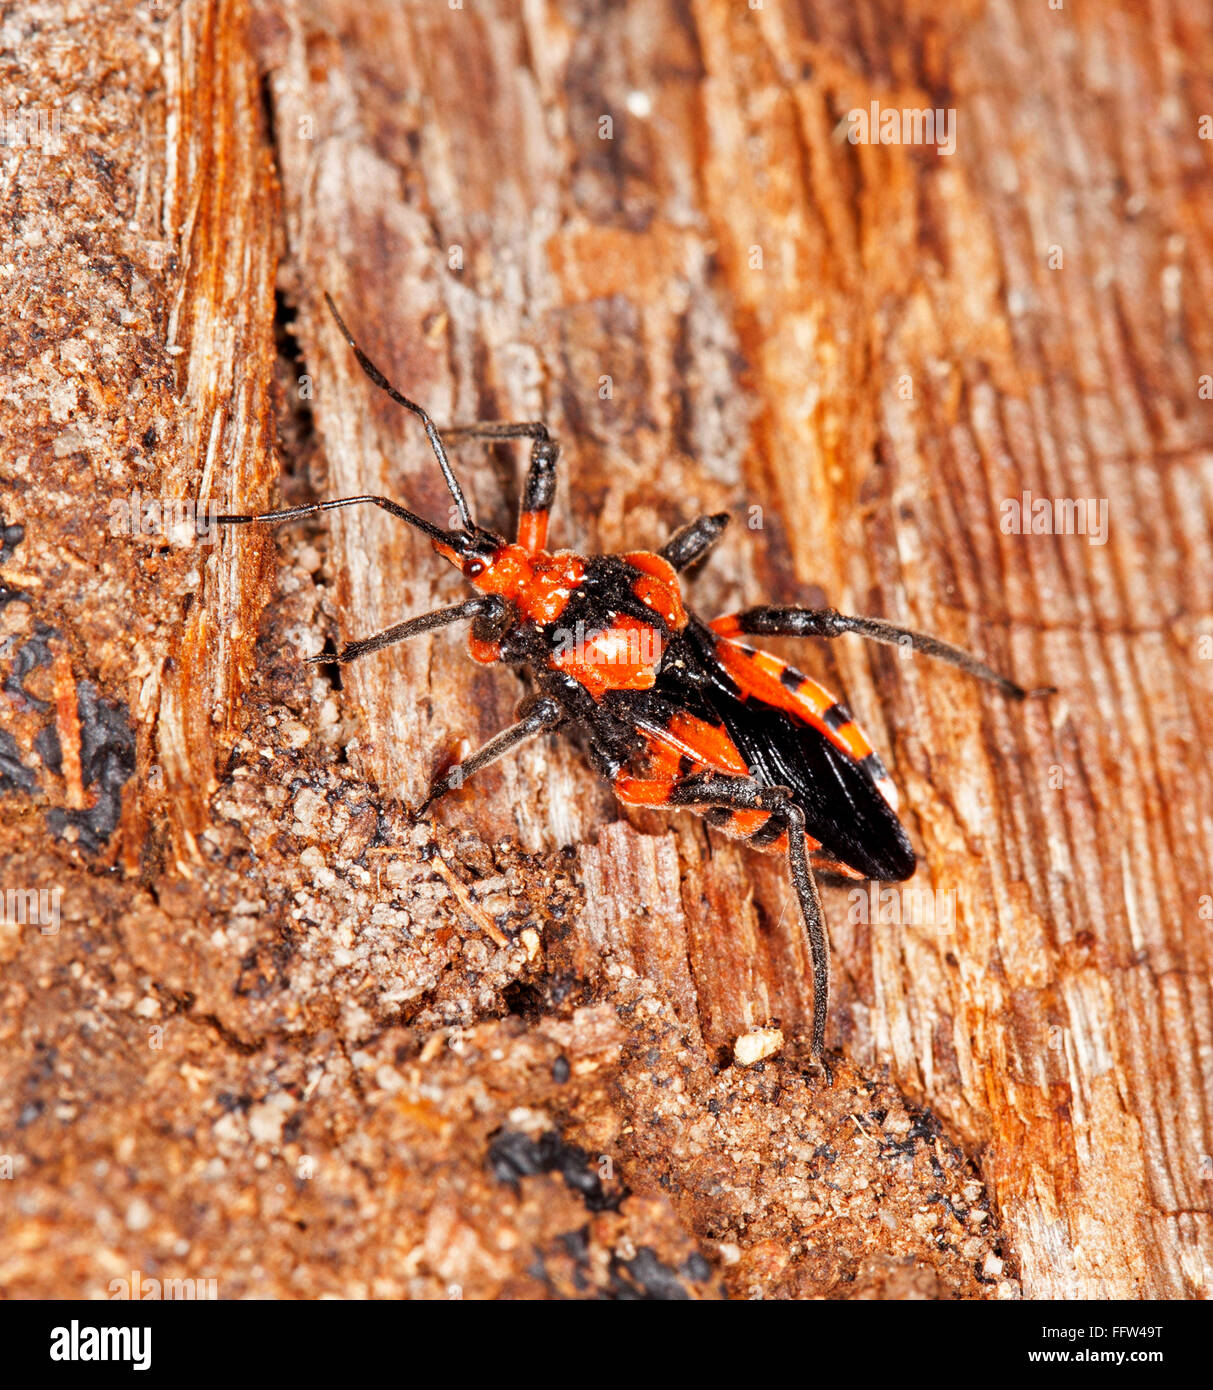 Rosso vivo e nero termite assassin bug Tegea atropicta sulla corteccia di alberi infestati con termiti, benefico insetto in Australia Foto Stock